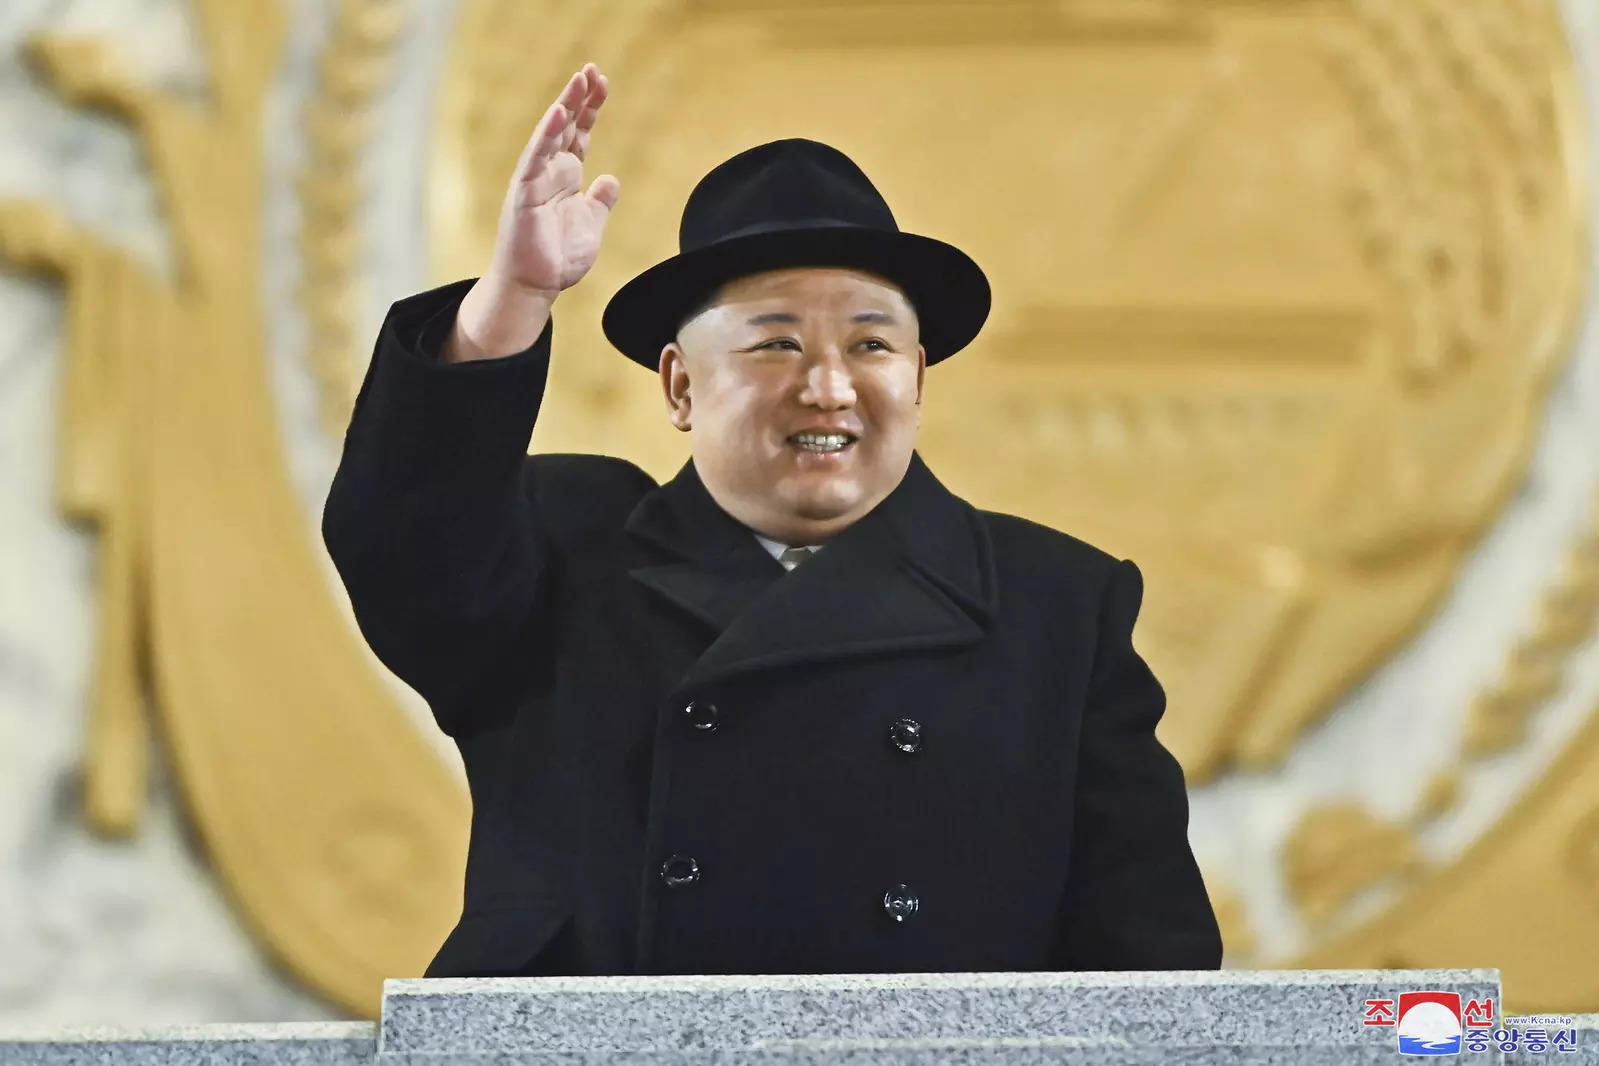 किम जोंग ने अपने देश के नाम संदेश जारी करते हुए कहा कि किसी भी समय परमाणु हमला करने के लिए हमें तैयार रहना होगा